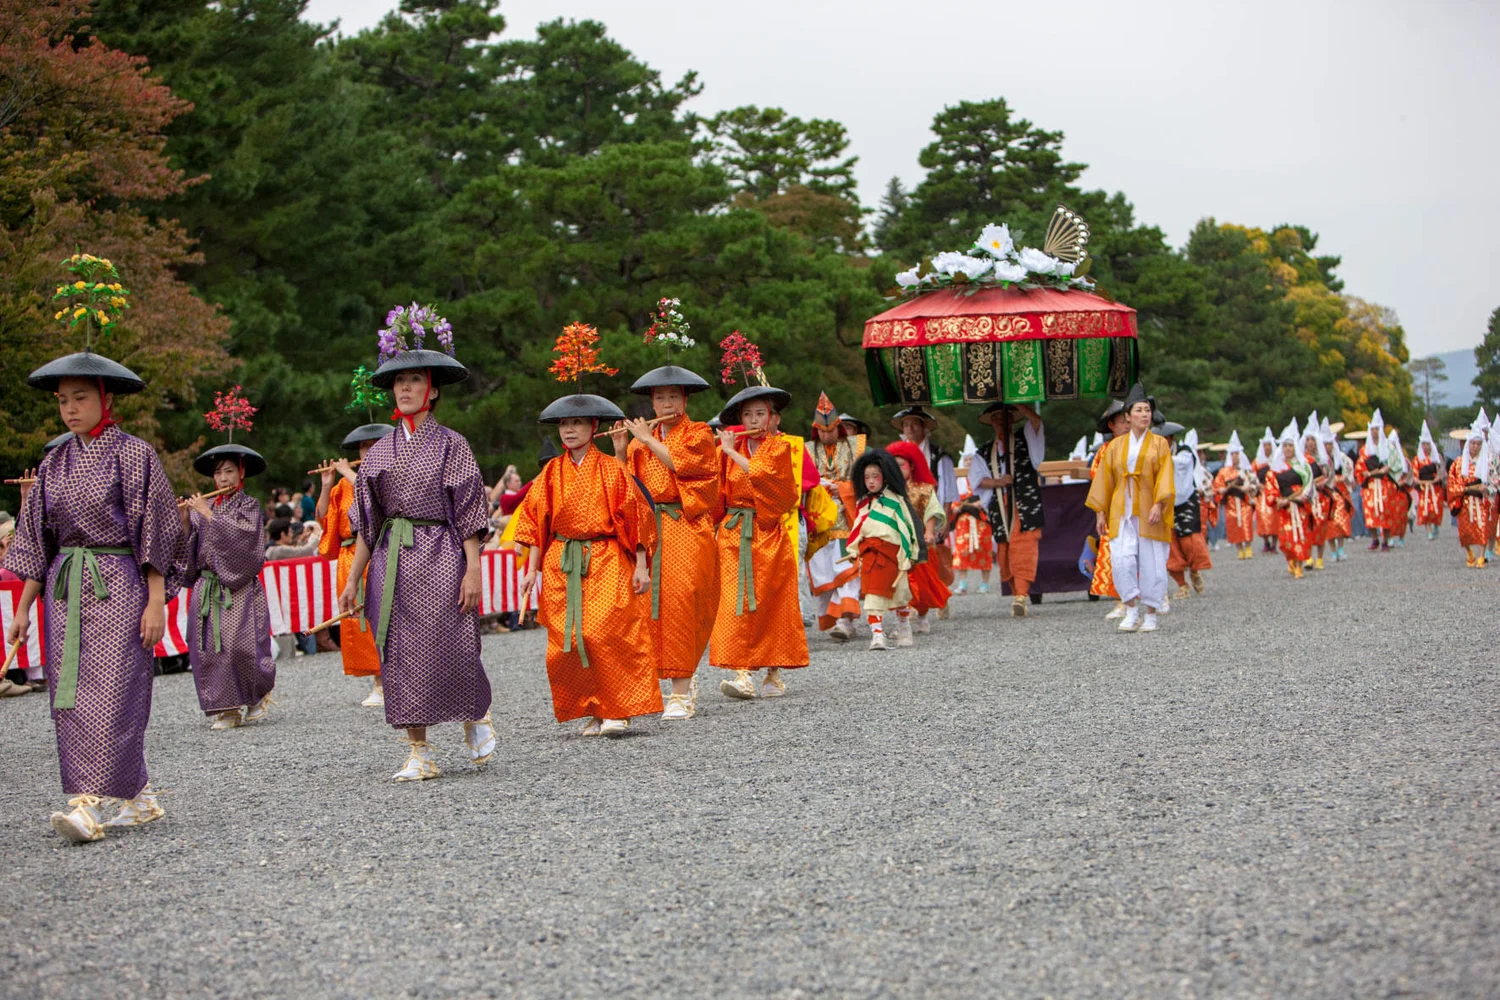 Jidai Matsuri Festival in Kyoto E-Tickets (October 26, 2019)